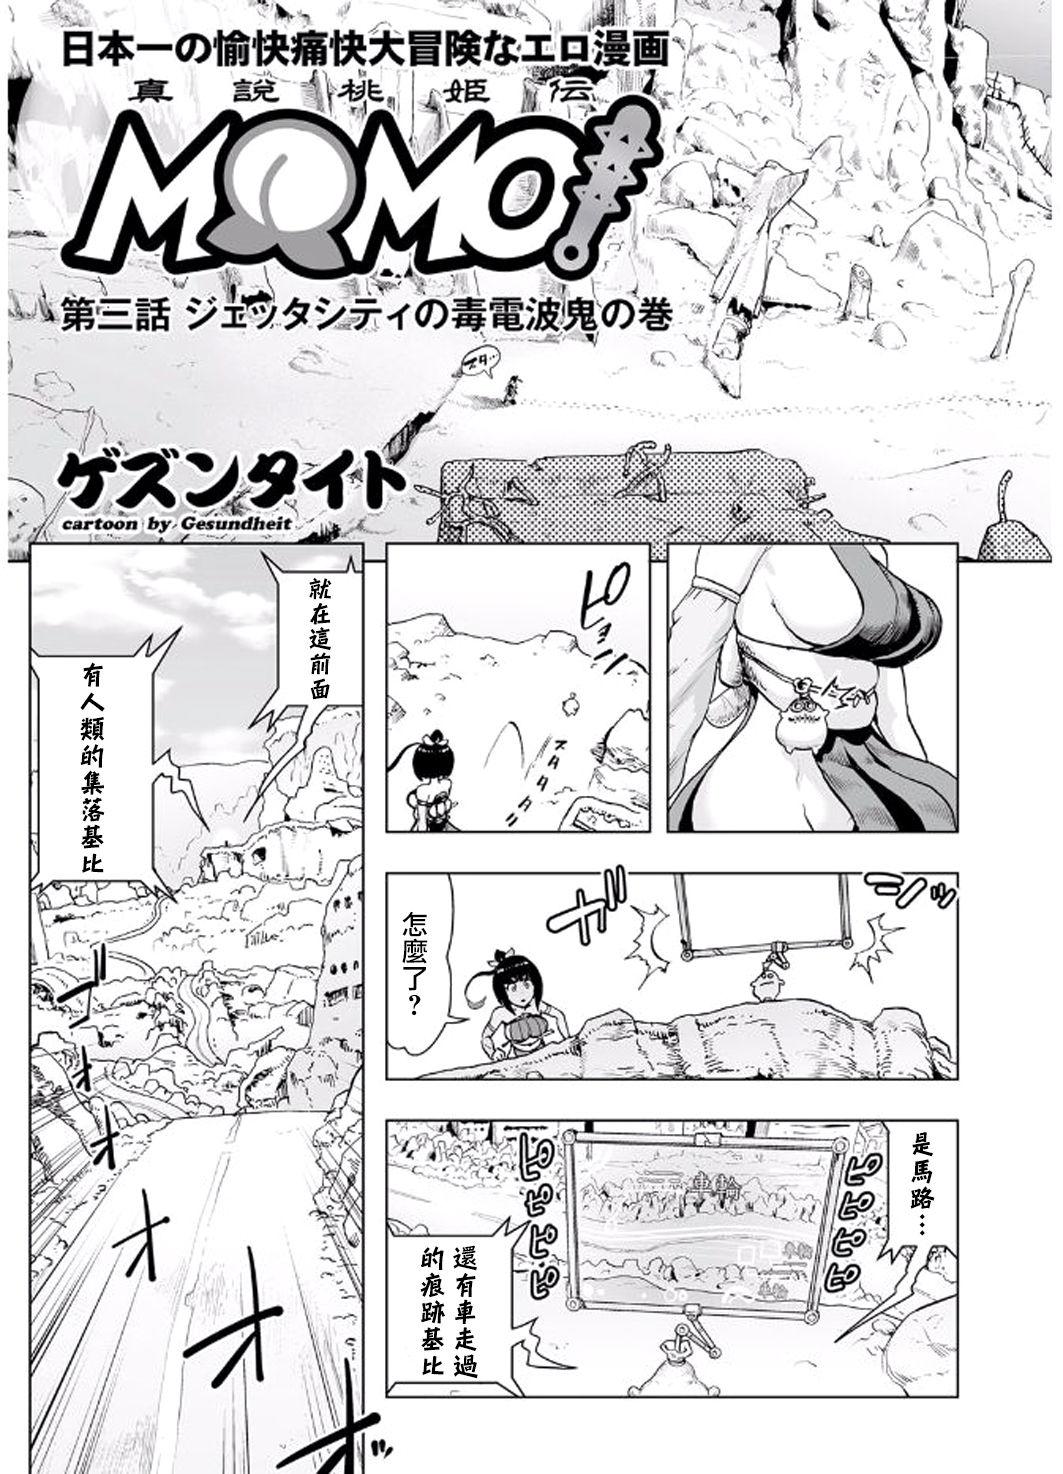 Squirting MOMO! Daisanwa Jetta City no Dokudenpa Oni no Maki Casada - Page 4